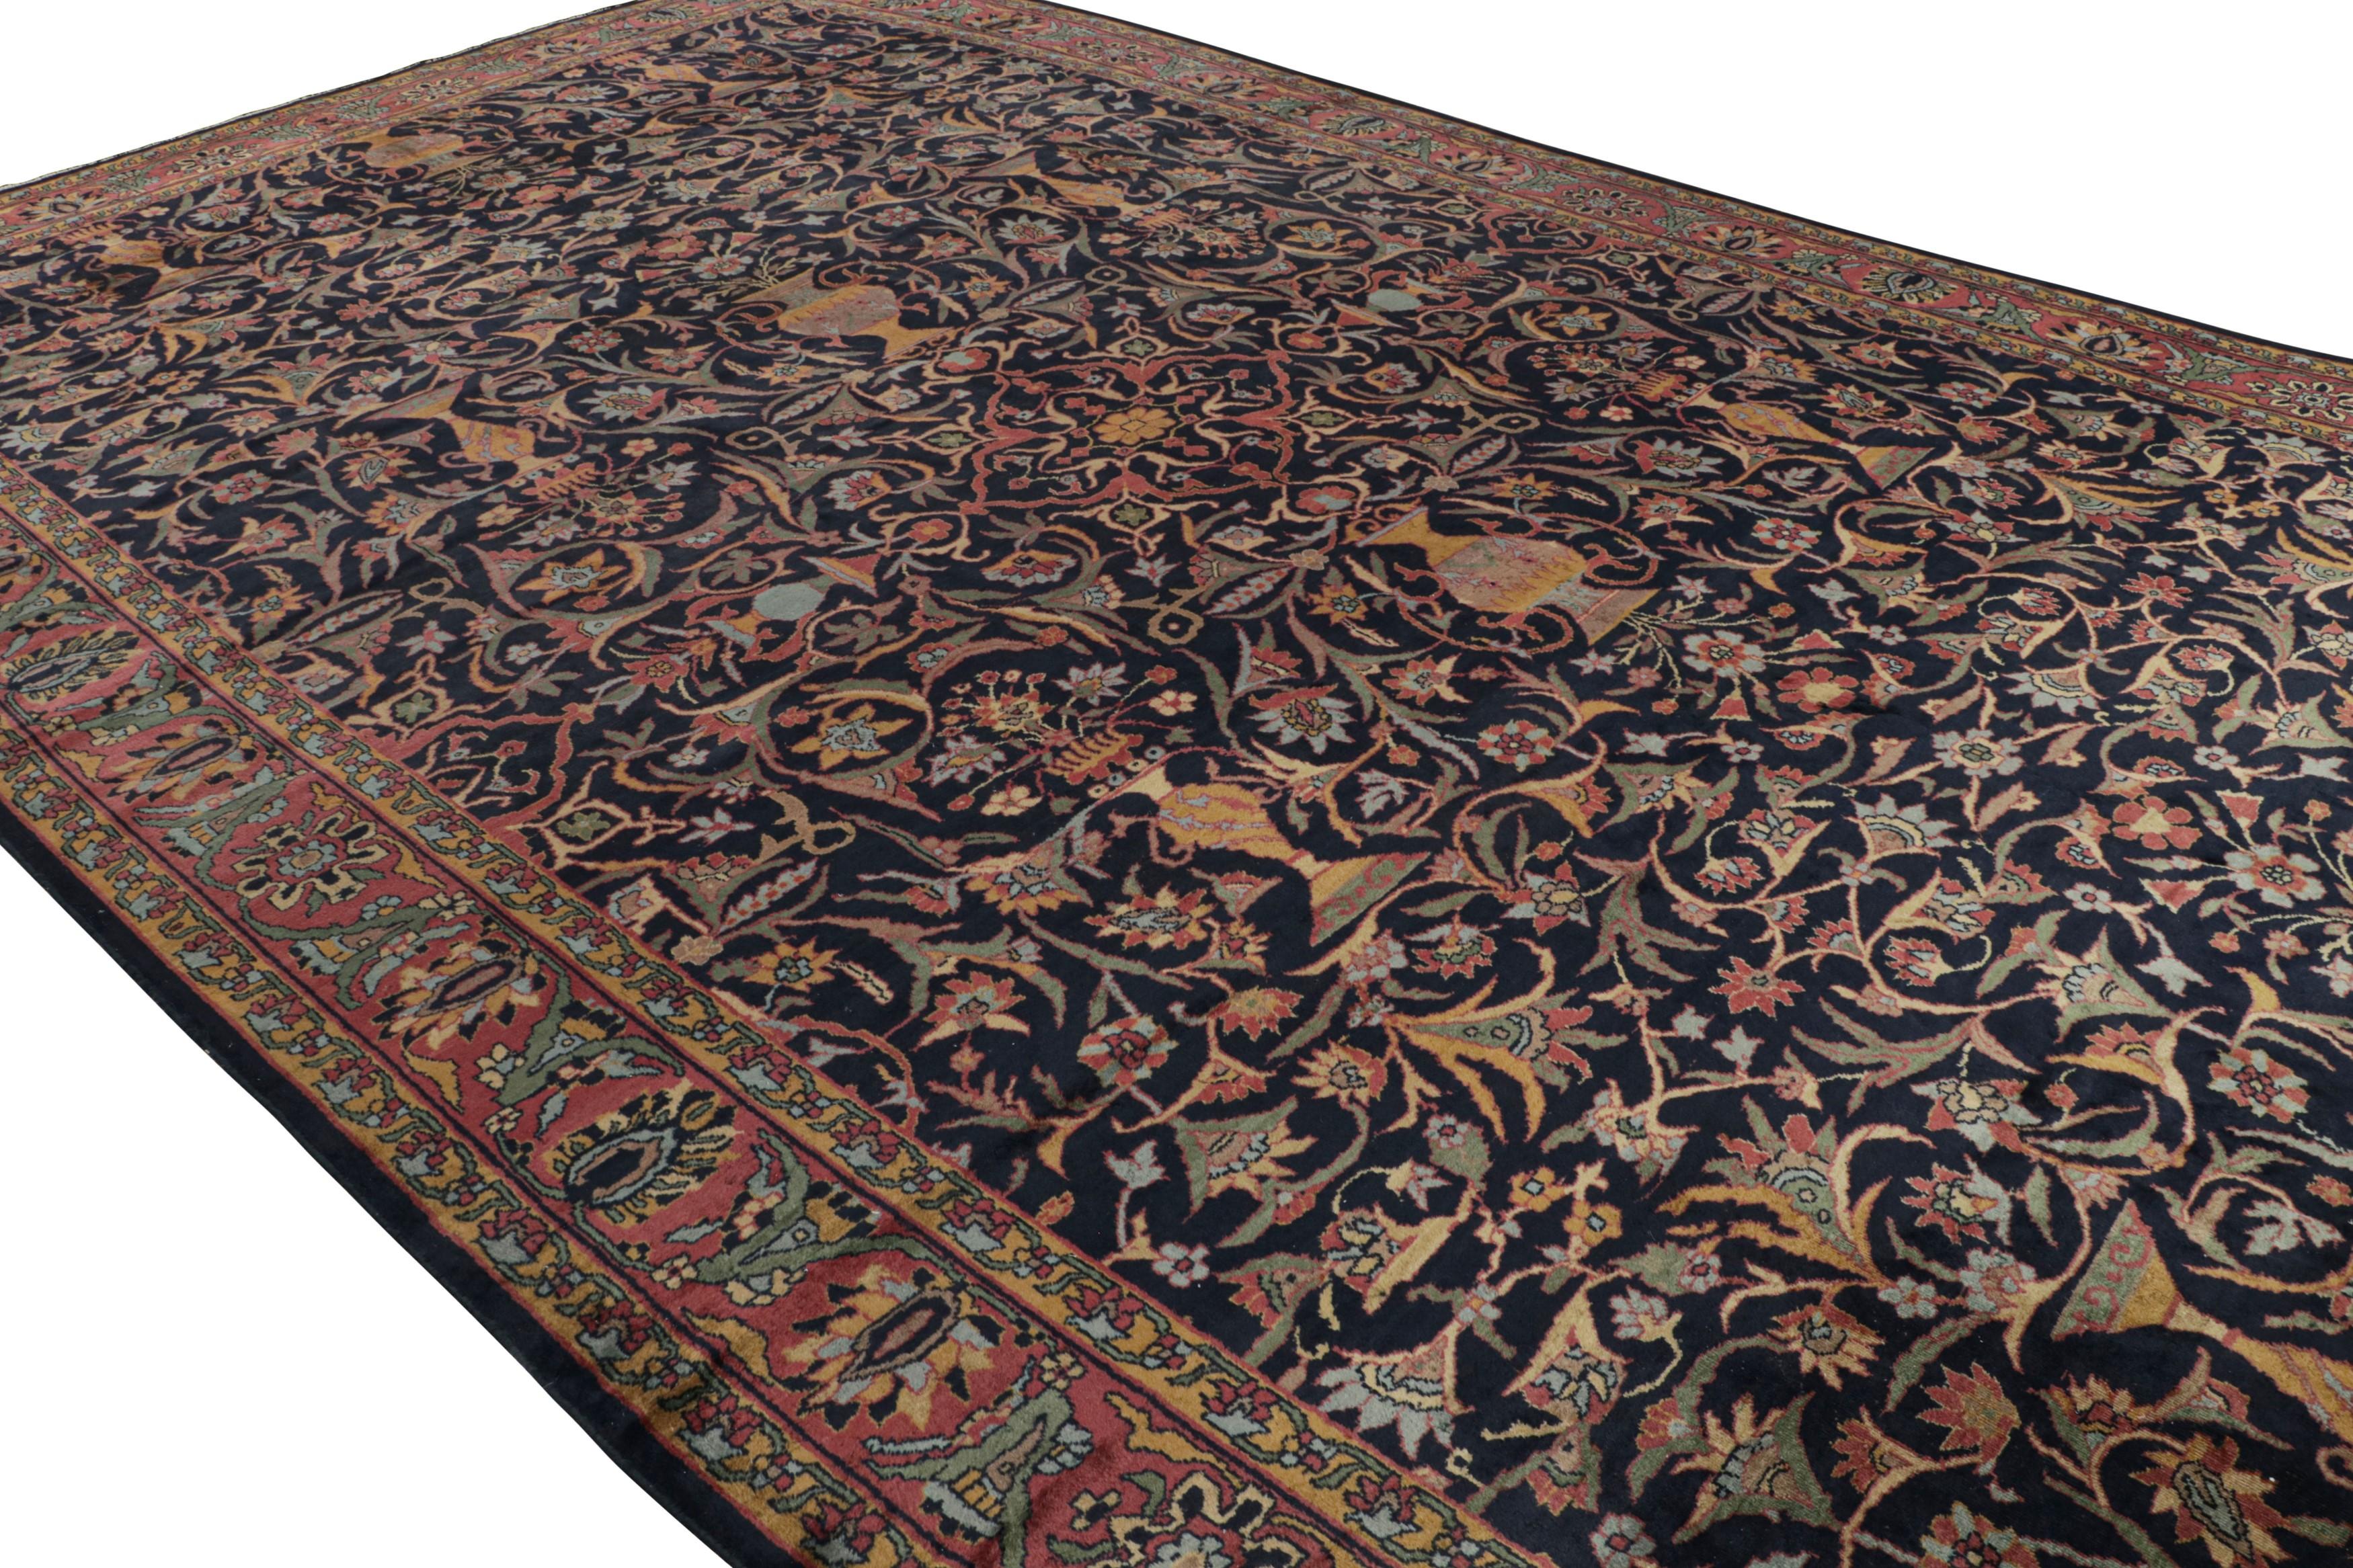 Noué à la main en laine, ce tapis Antique Shahrestan surdimensionné 12x19 présente un jeu de style all-over et médaillon, avec des motifs géométriques sur un champ bleu nuit. 

Sur le Design : 

Les admirateurs du métier noteront qu'il s'agit d'un